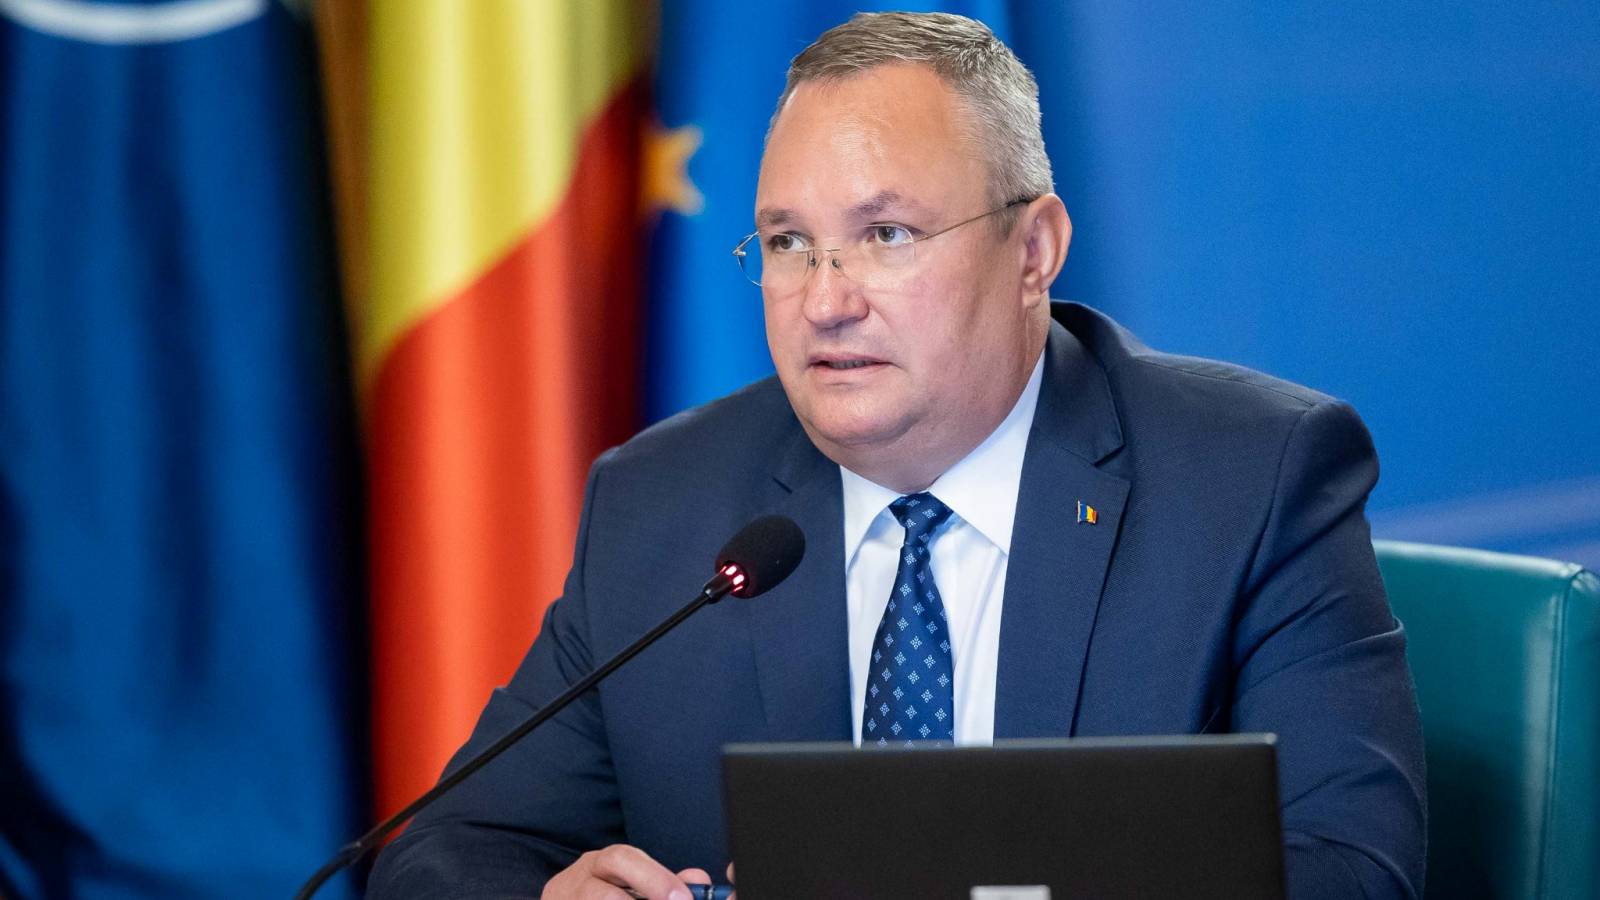 Nicolae Ciuca anuncia nuevas medidas gubernamentales para Rumanía